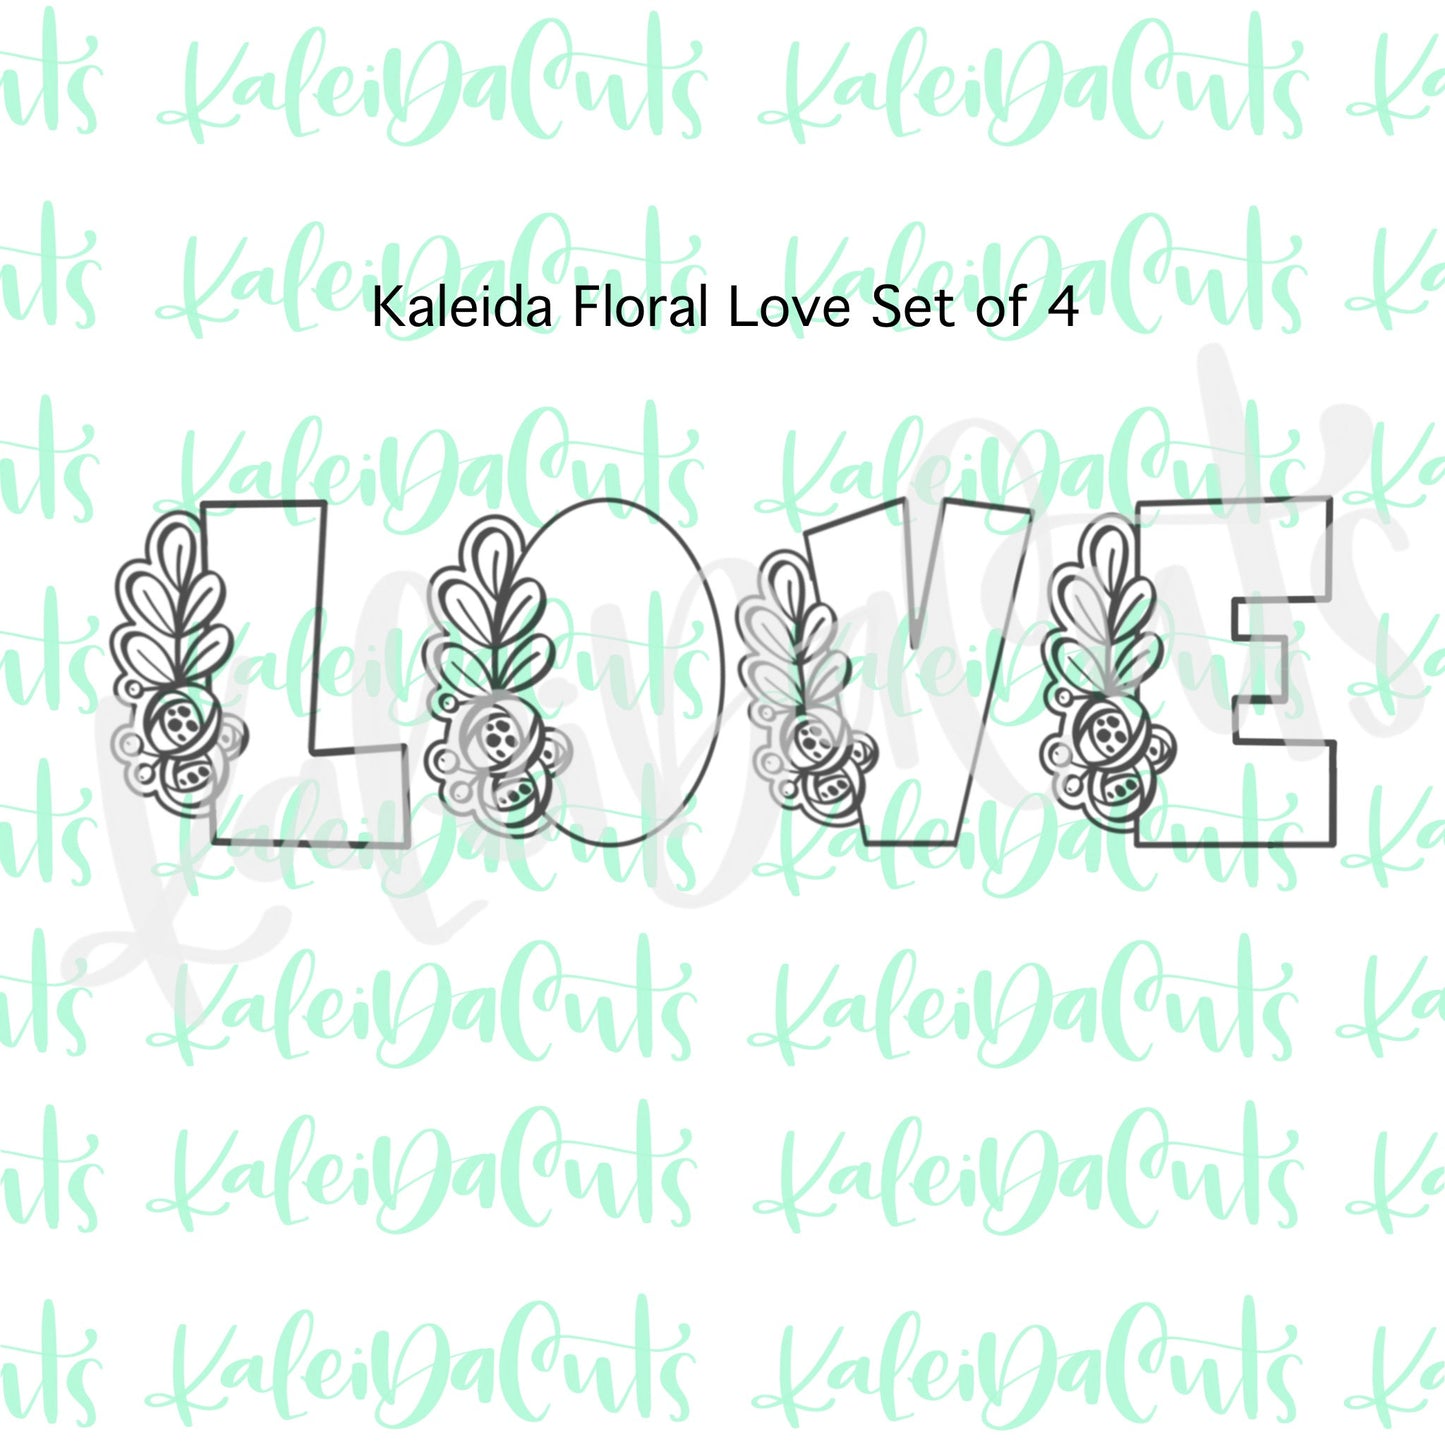 Kaleida-Floral Love Cookie Cutter Set of 4